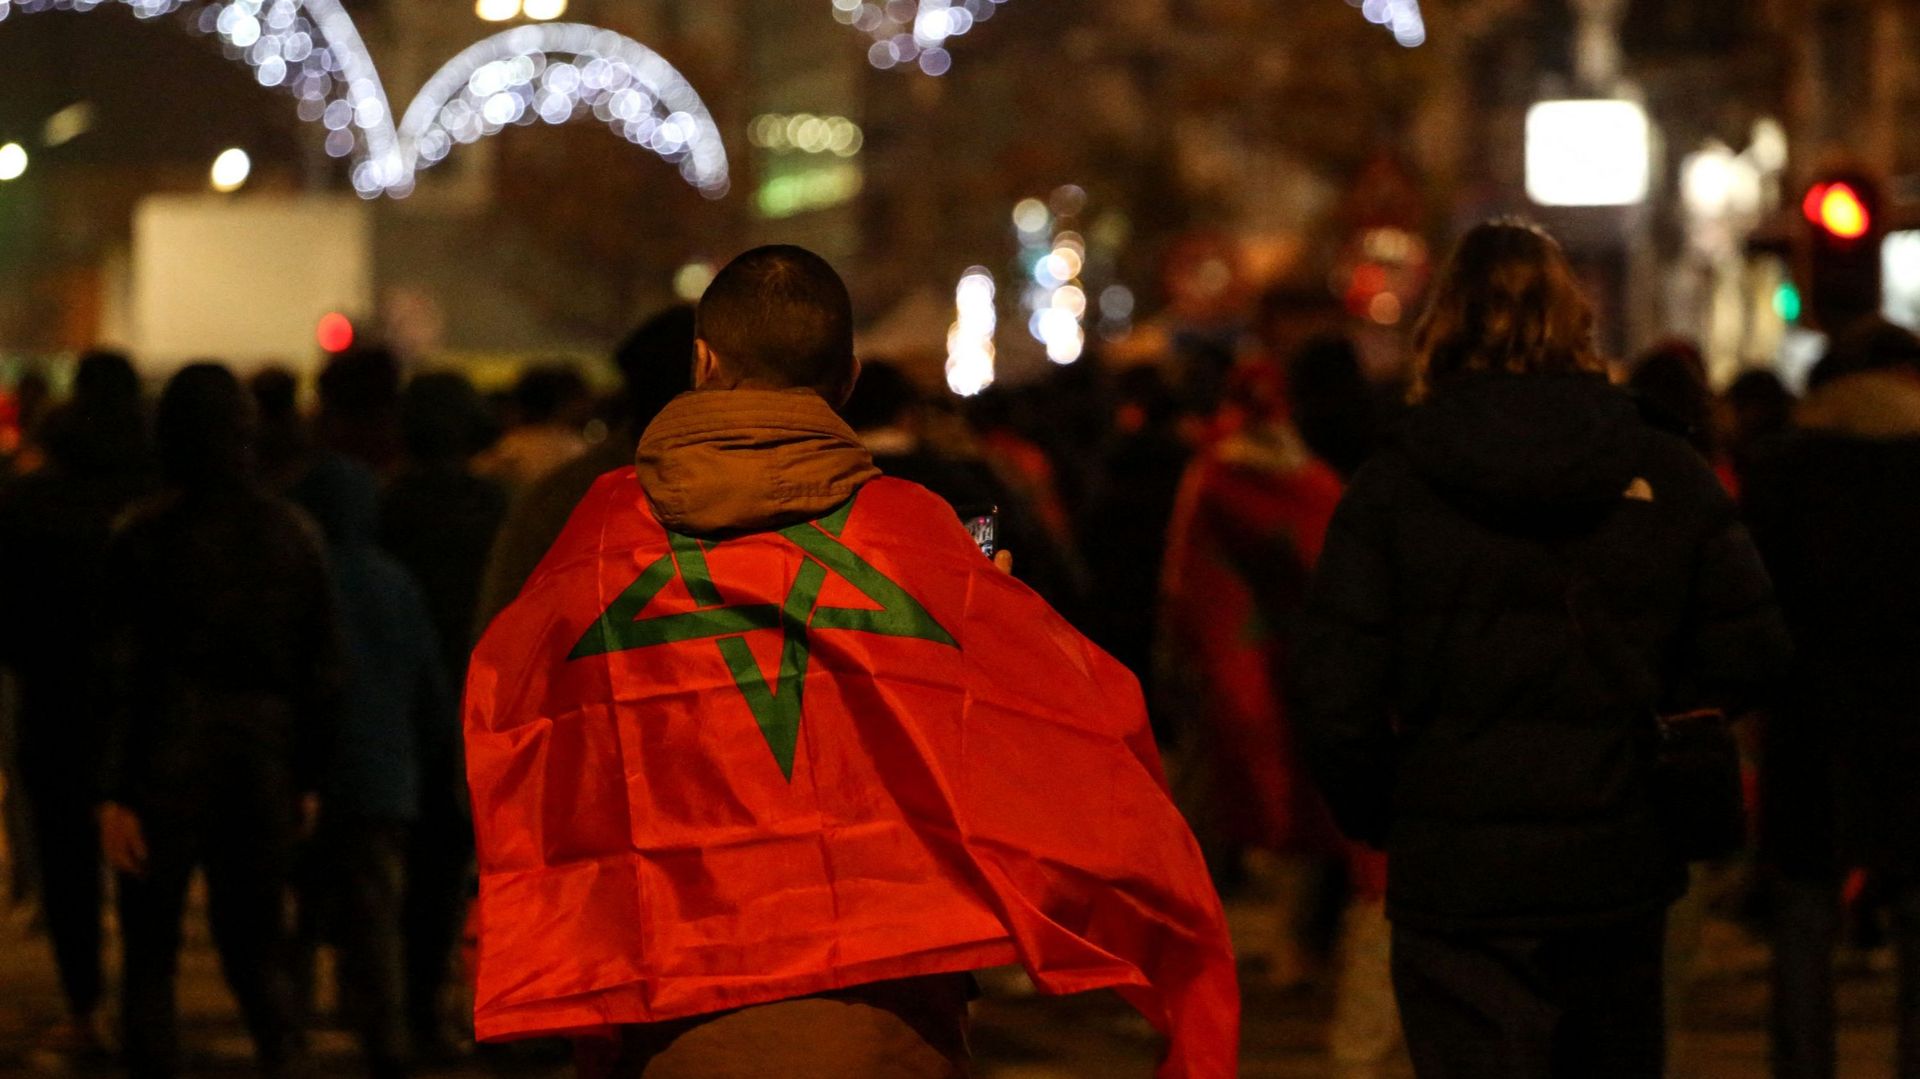 Un supporter, enveloppé dans le drapeau marocain dans une rue après la victoire du Maroc lors du match de football du groupe F de la Coupe du monde Qatar 2022 entre le Maroc et le Canada, à Bruxelles, le 1er décembre 2022.
